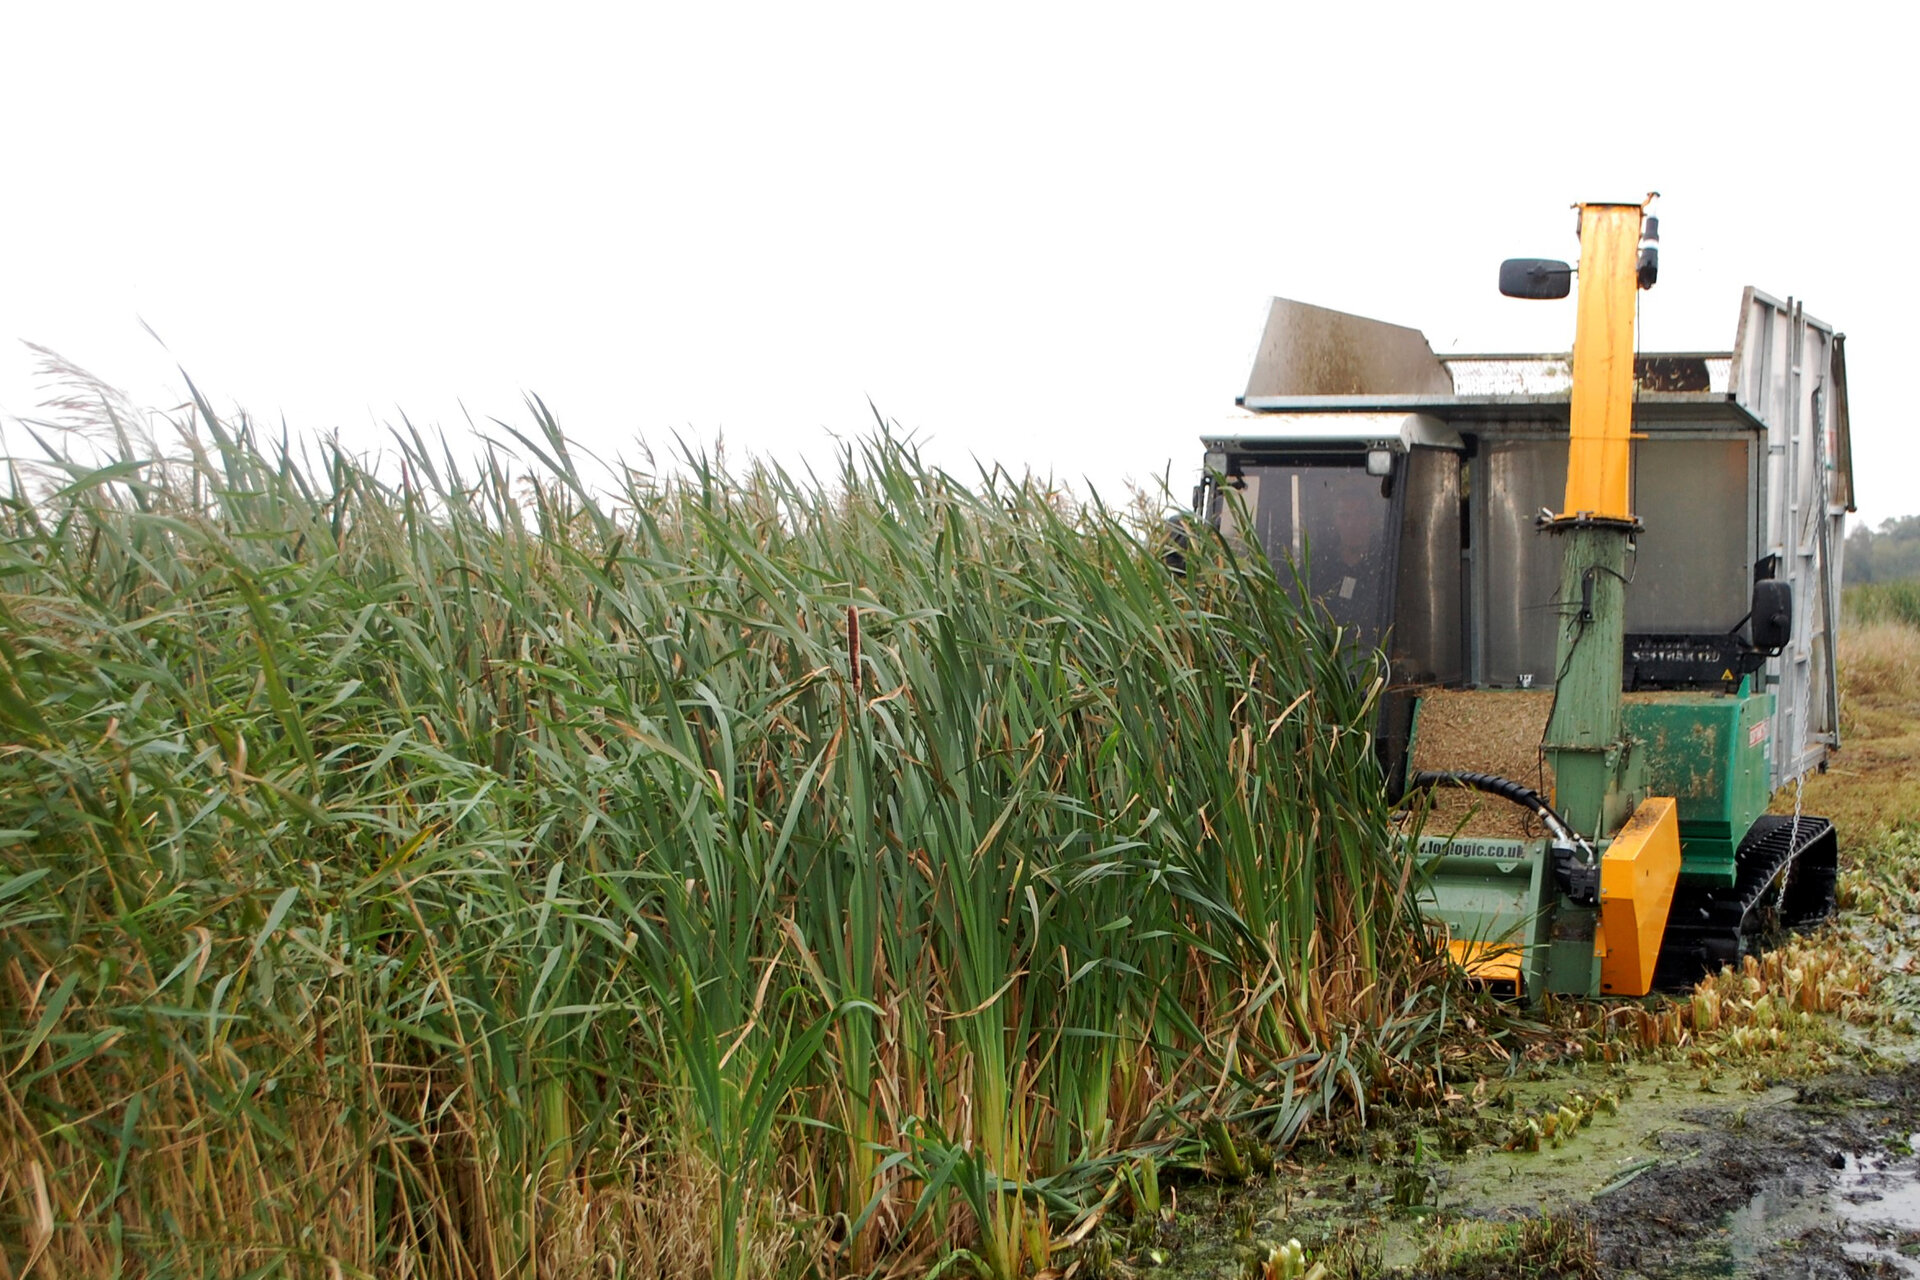 Die Ernte der Rohrkolben-Biomasse erfolgt ausschließlich mit Spezialmaschinen, die ein sehr geringes Gewicht haben.